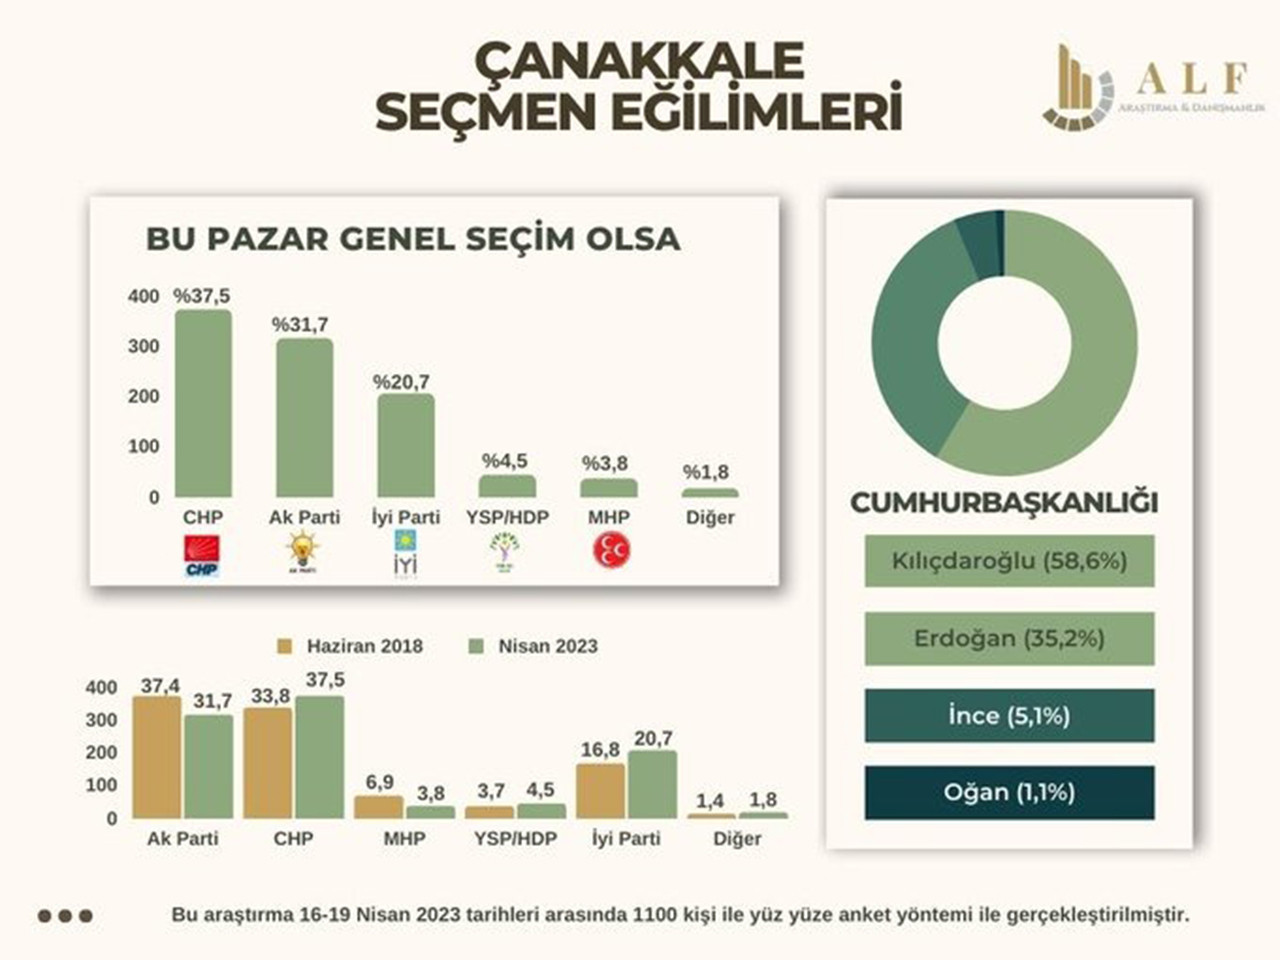 ALF Araştırma, AK Parti‘nin kalesi olarak bilinen Erzincan ve Çanakkale’de yapılan son anket sonuçlarını açıkladı.